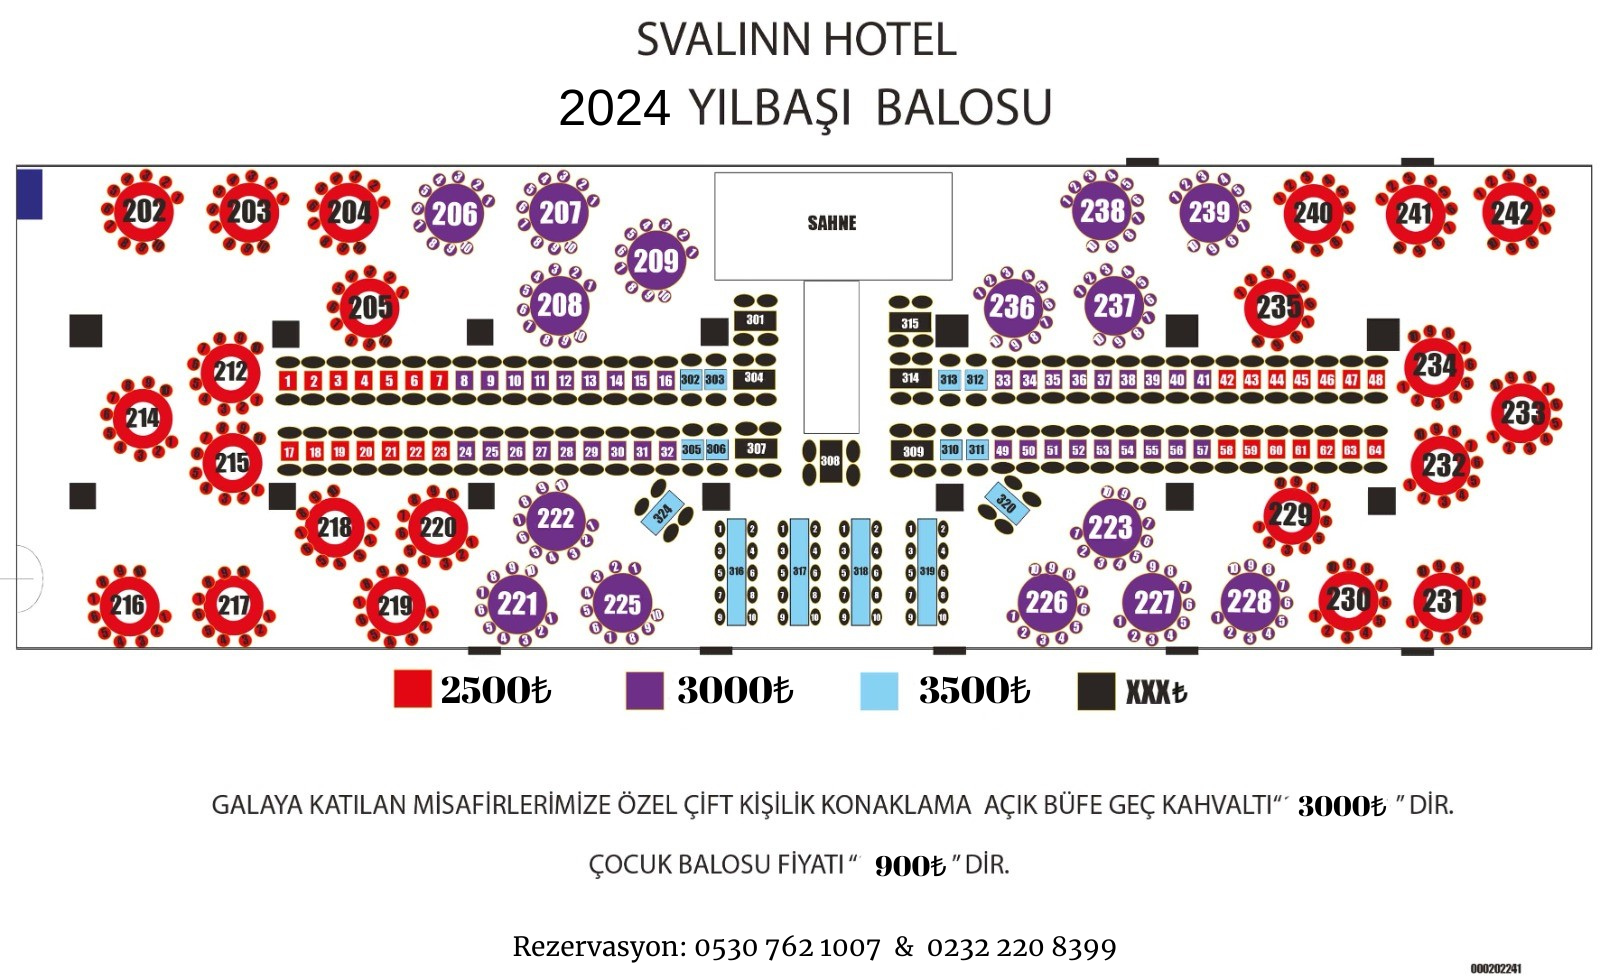 Svalinn Hotel İzmir Yılbaşı 2024